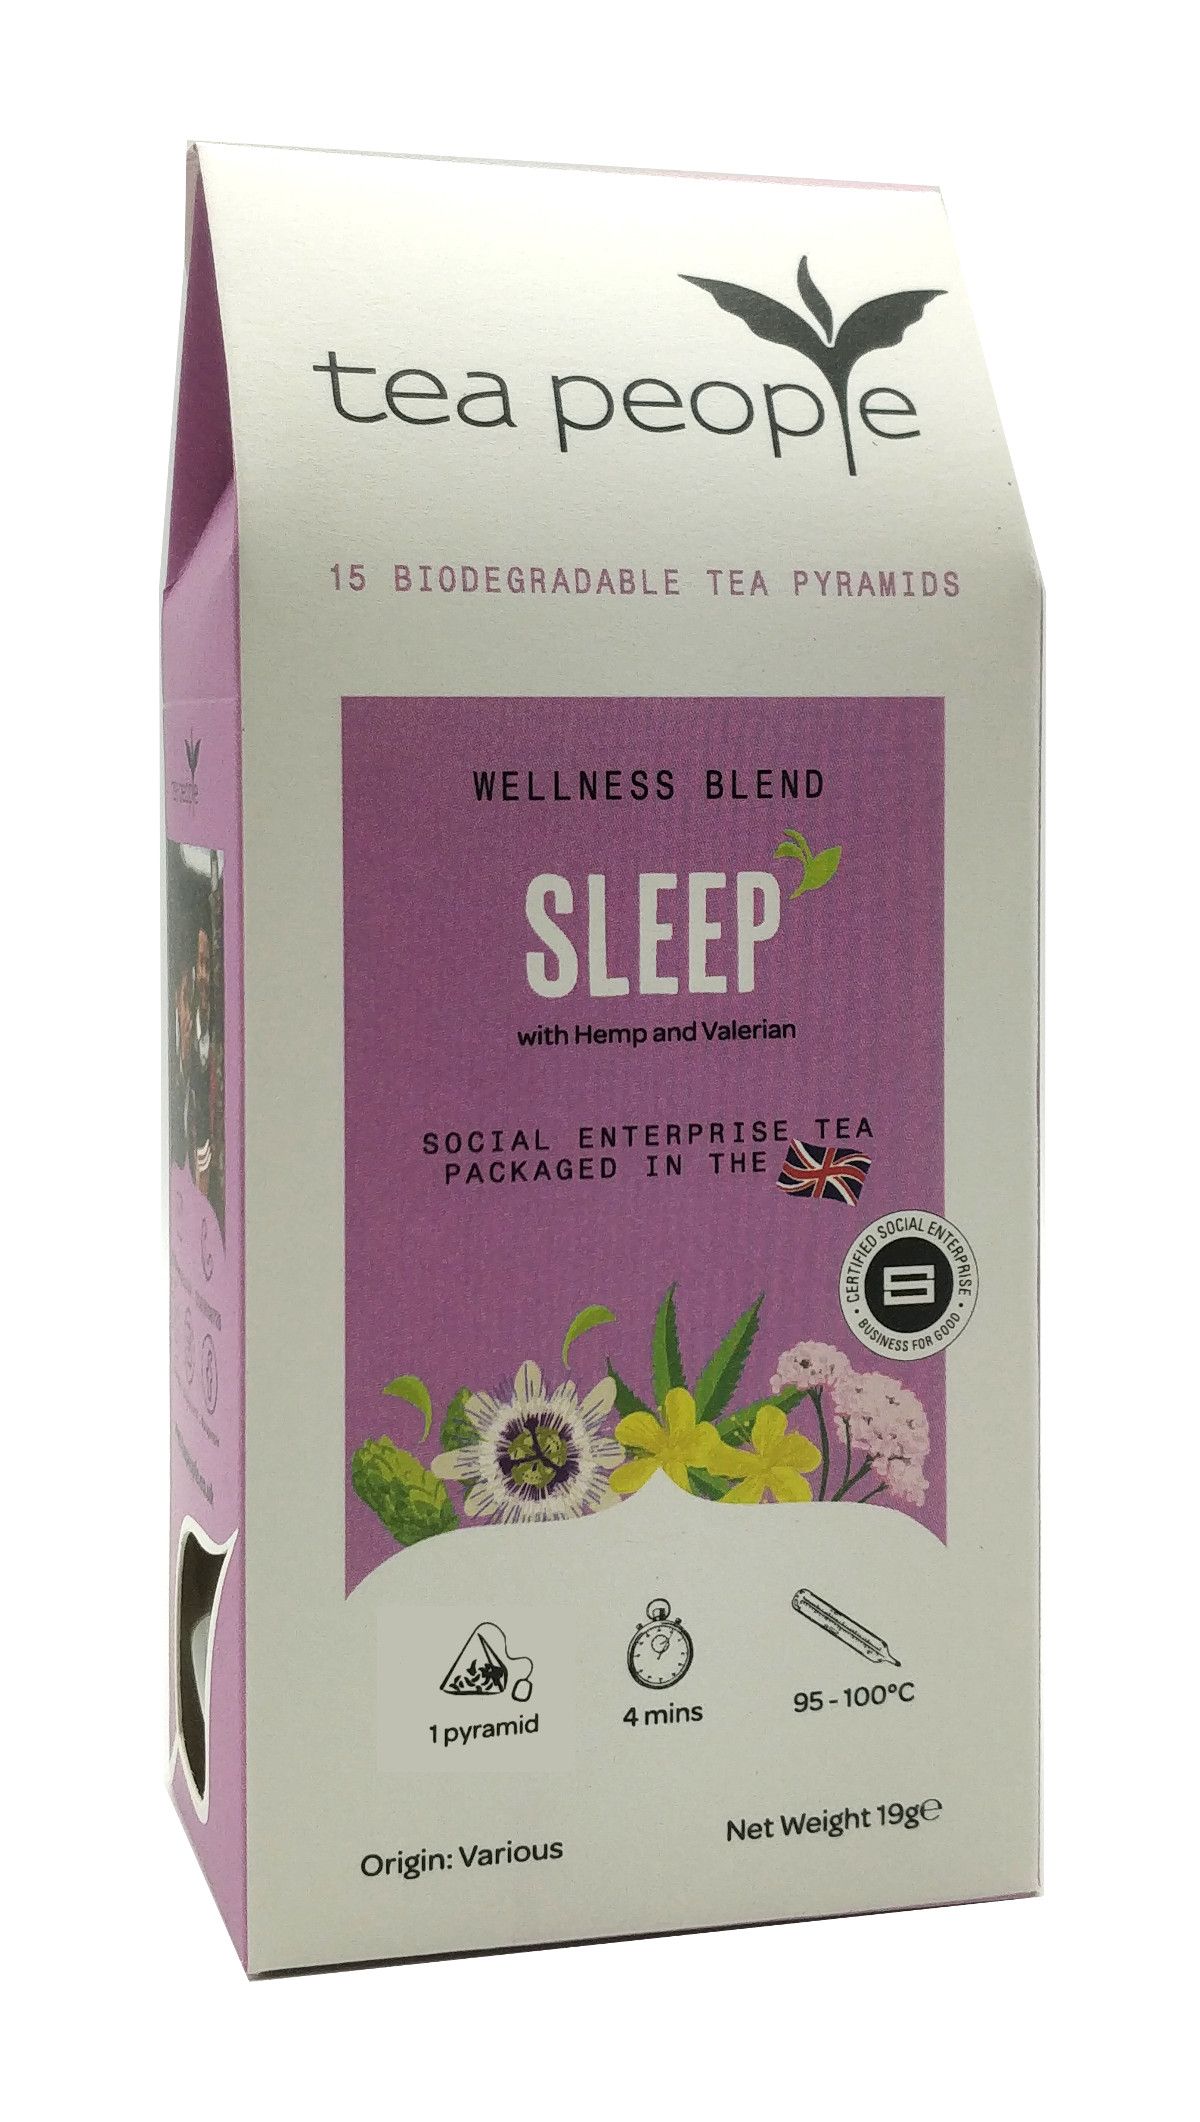 The Tea People Sleep Pyramid Tea Bag